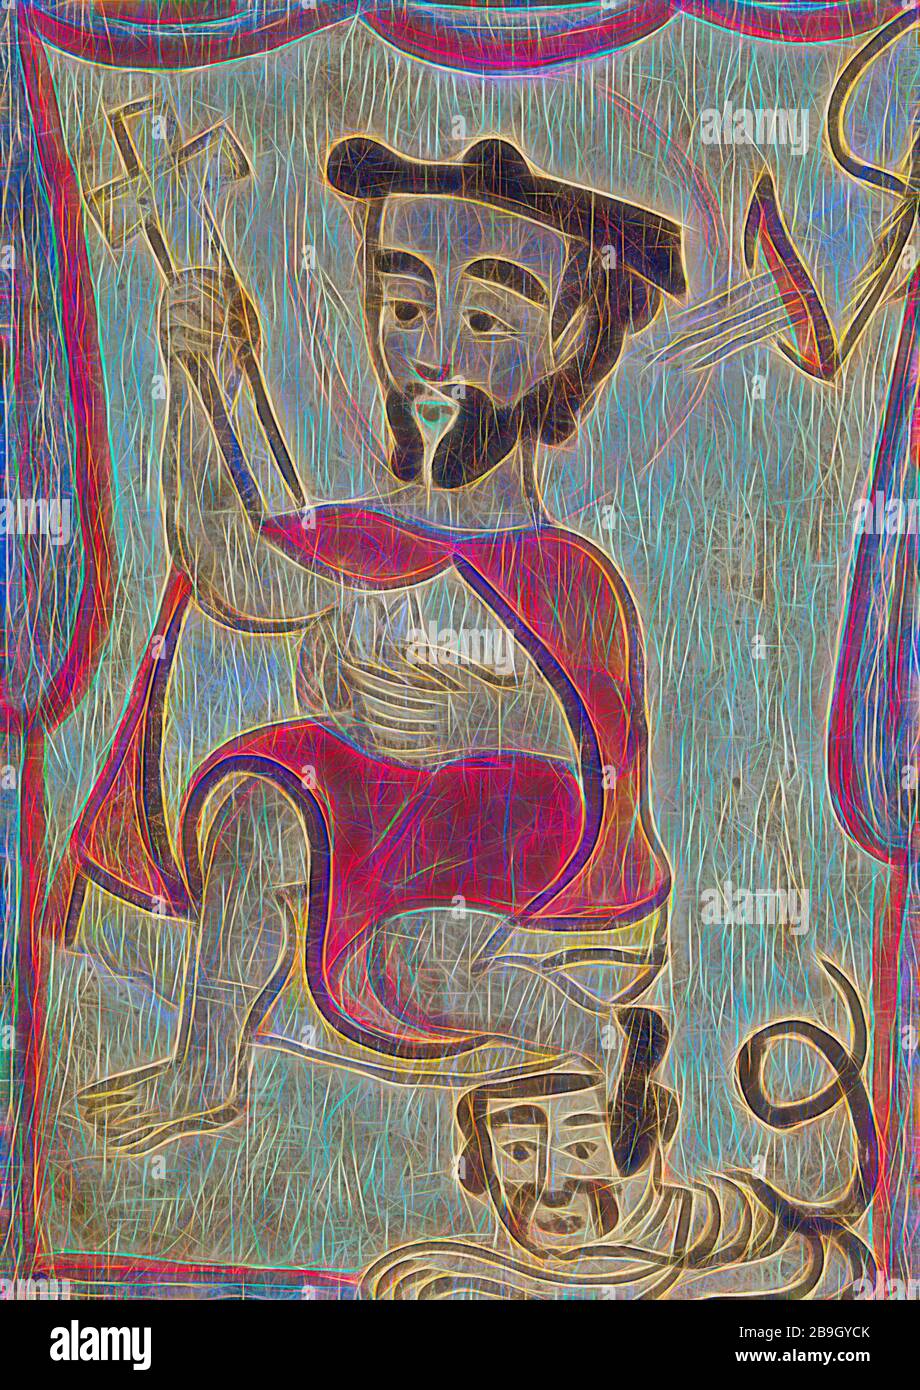 Nuevo mexicano: San Jerónimo, José Rafael Aragón, Nuevo mexicano, c. 1840, Pintura a base de agua sobre panel de madera, total: 13 5/16 x 9 1/2 pulg. (33.9 x 24.1 cm) Foto de stock